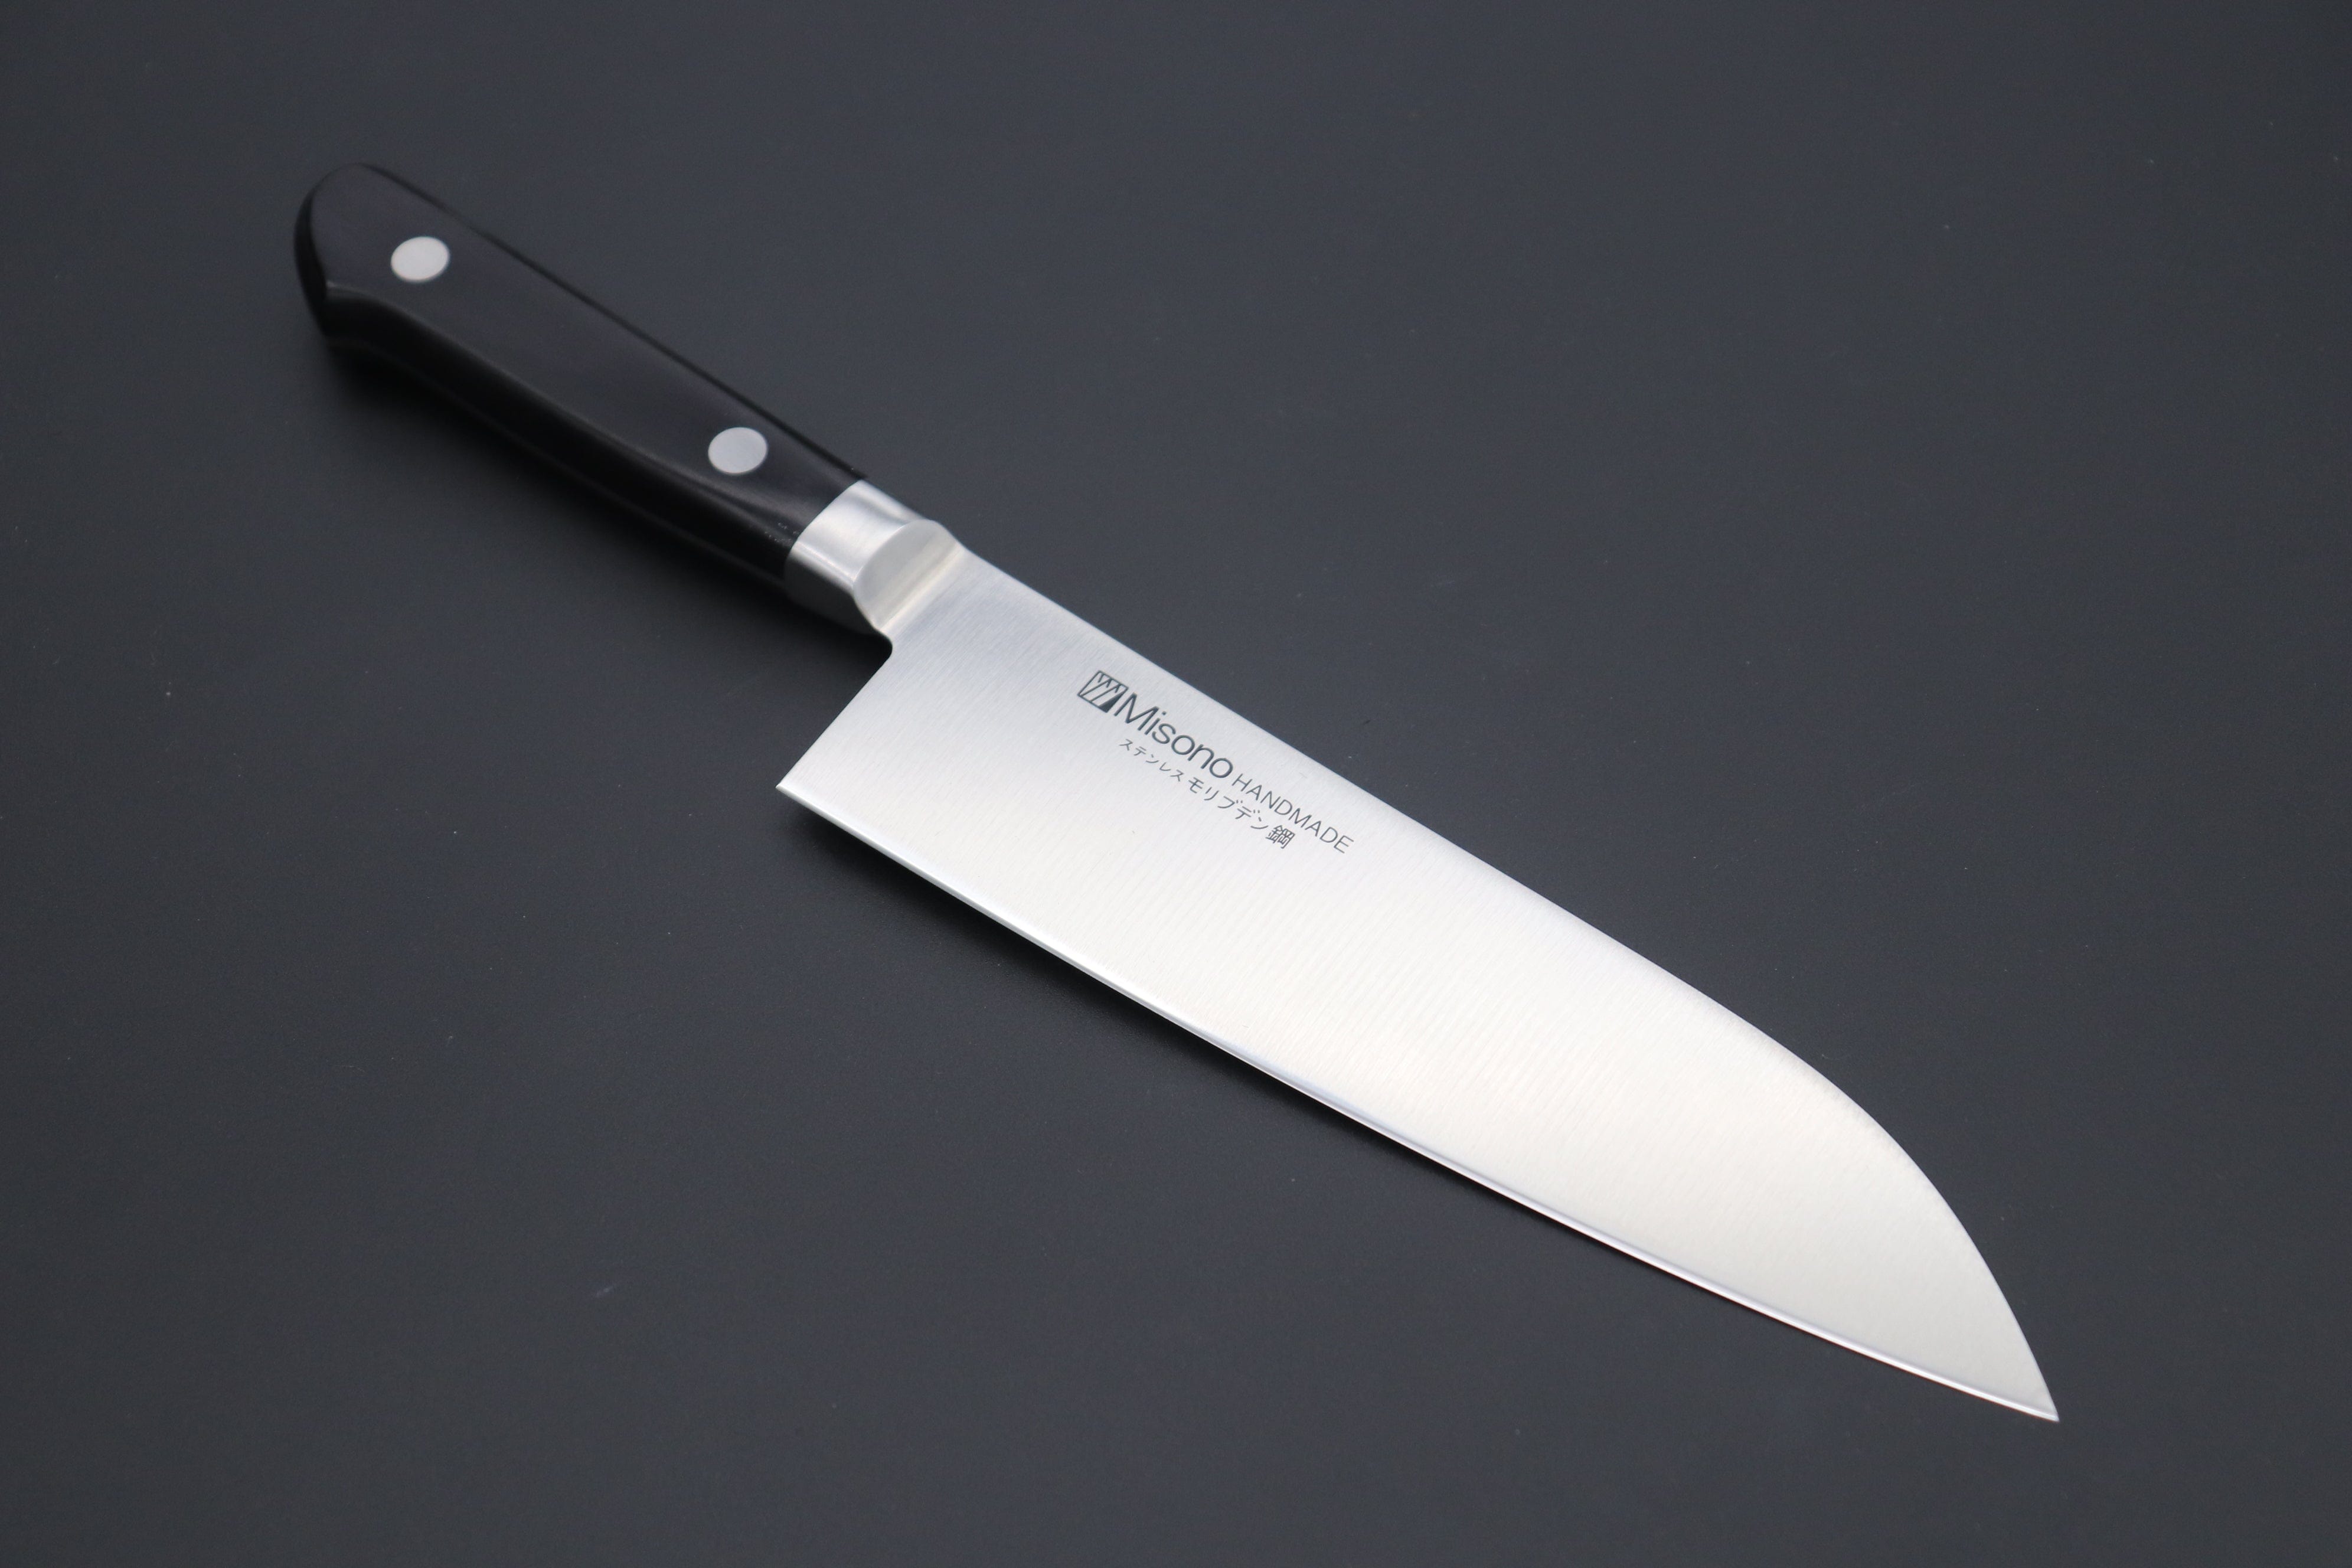 The Best Santoku Knives